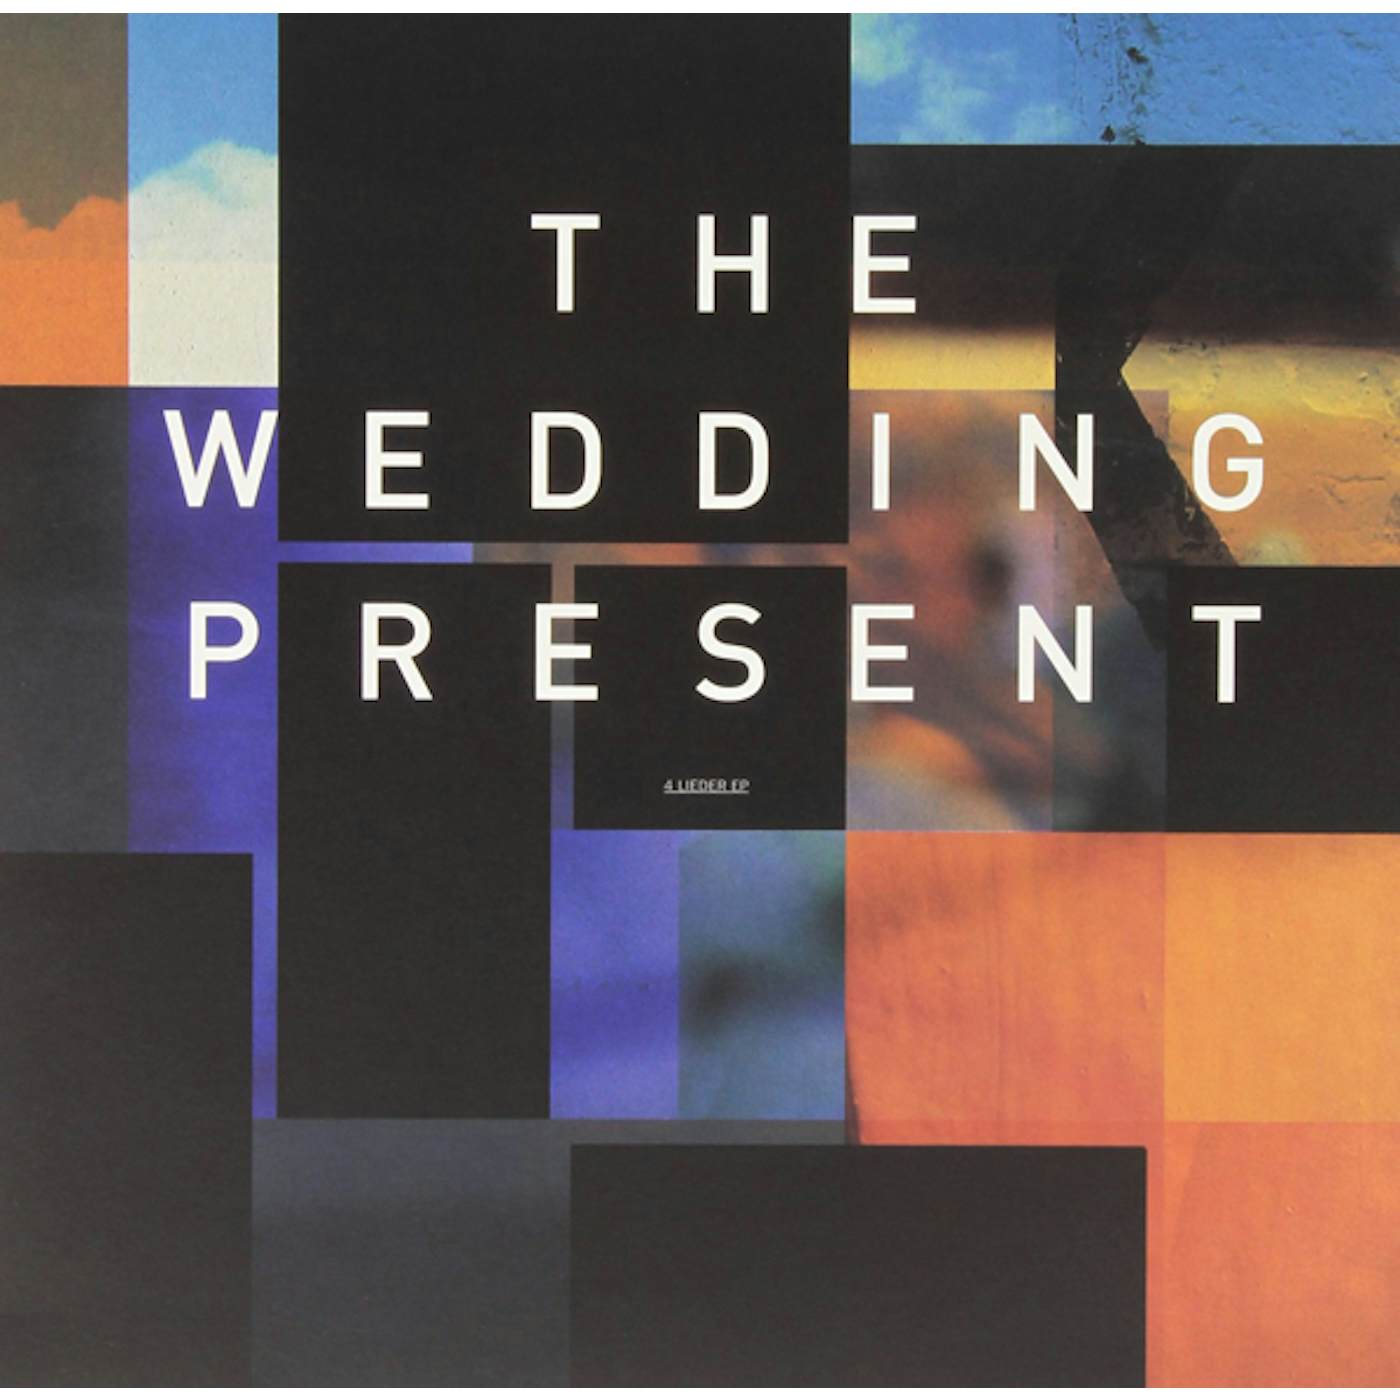 The Wedding Present 4 LIEDER Vinyl Record